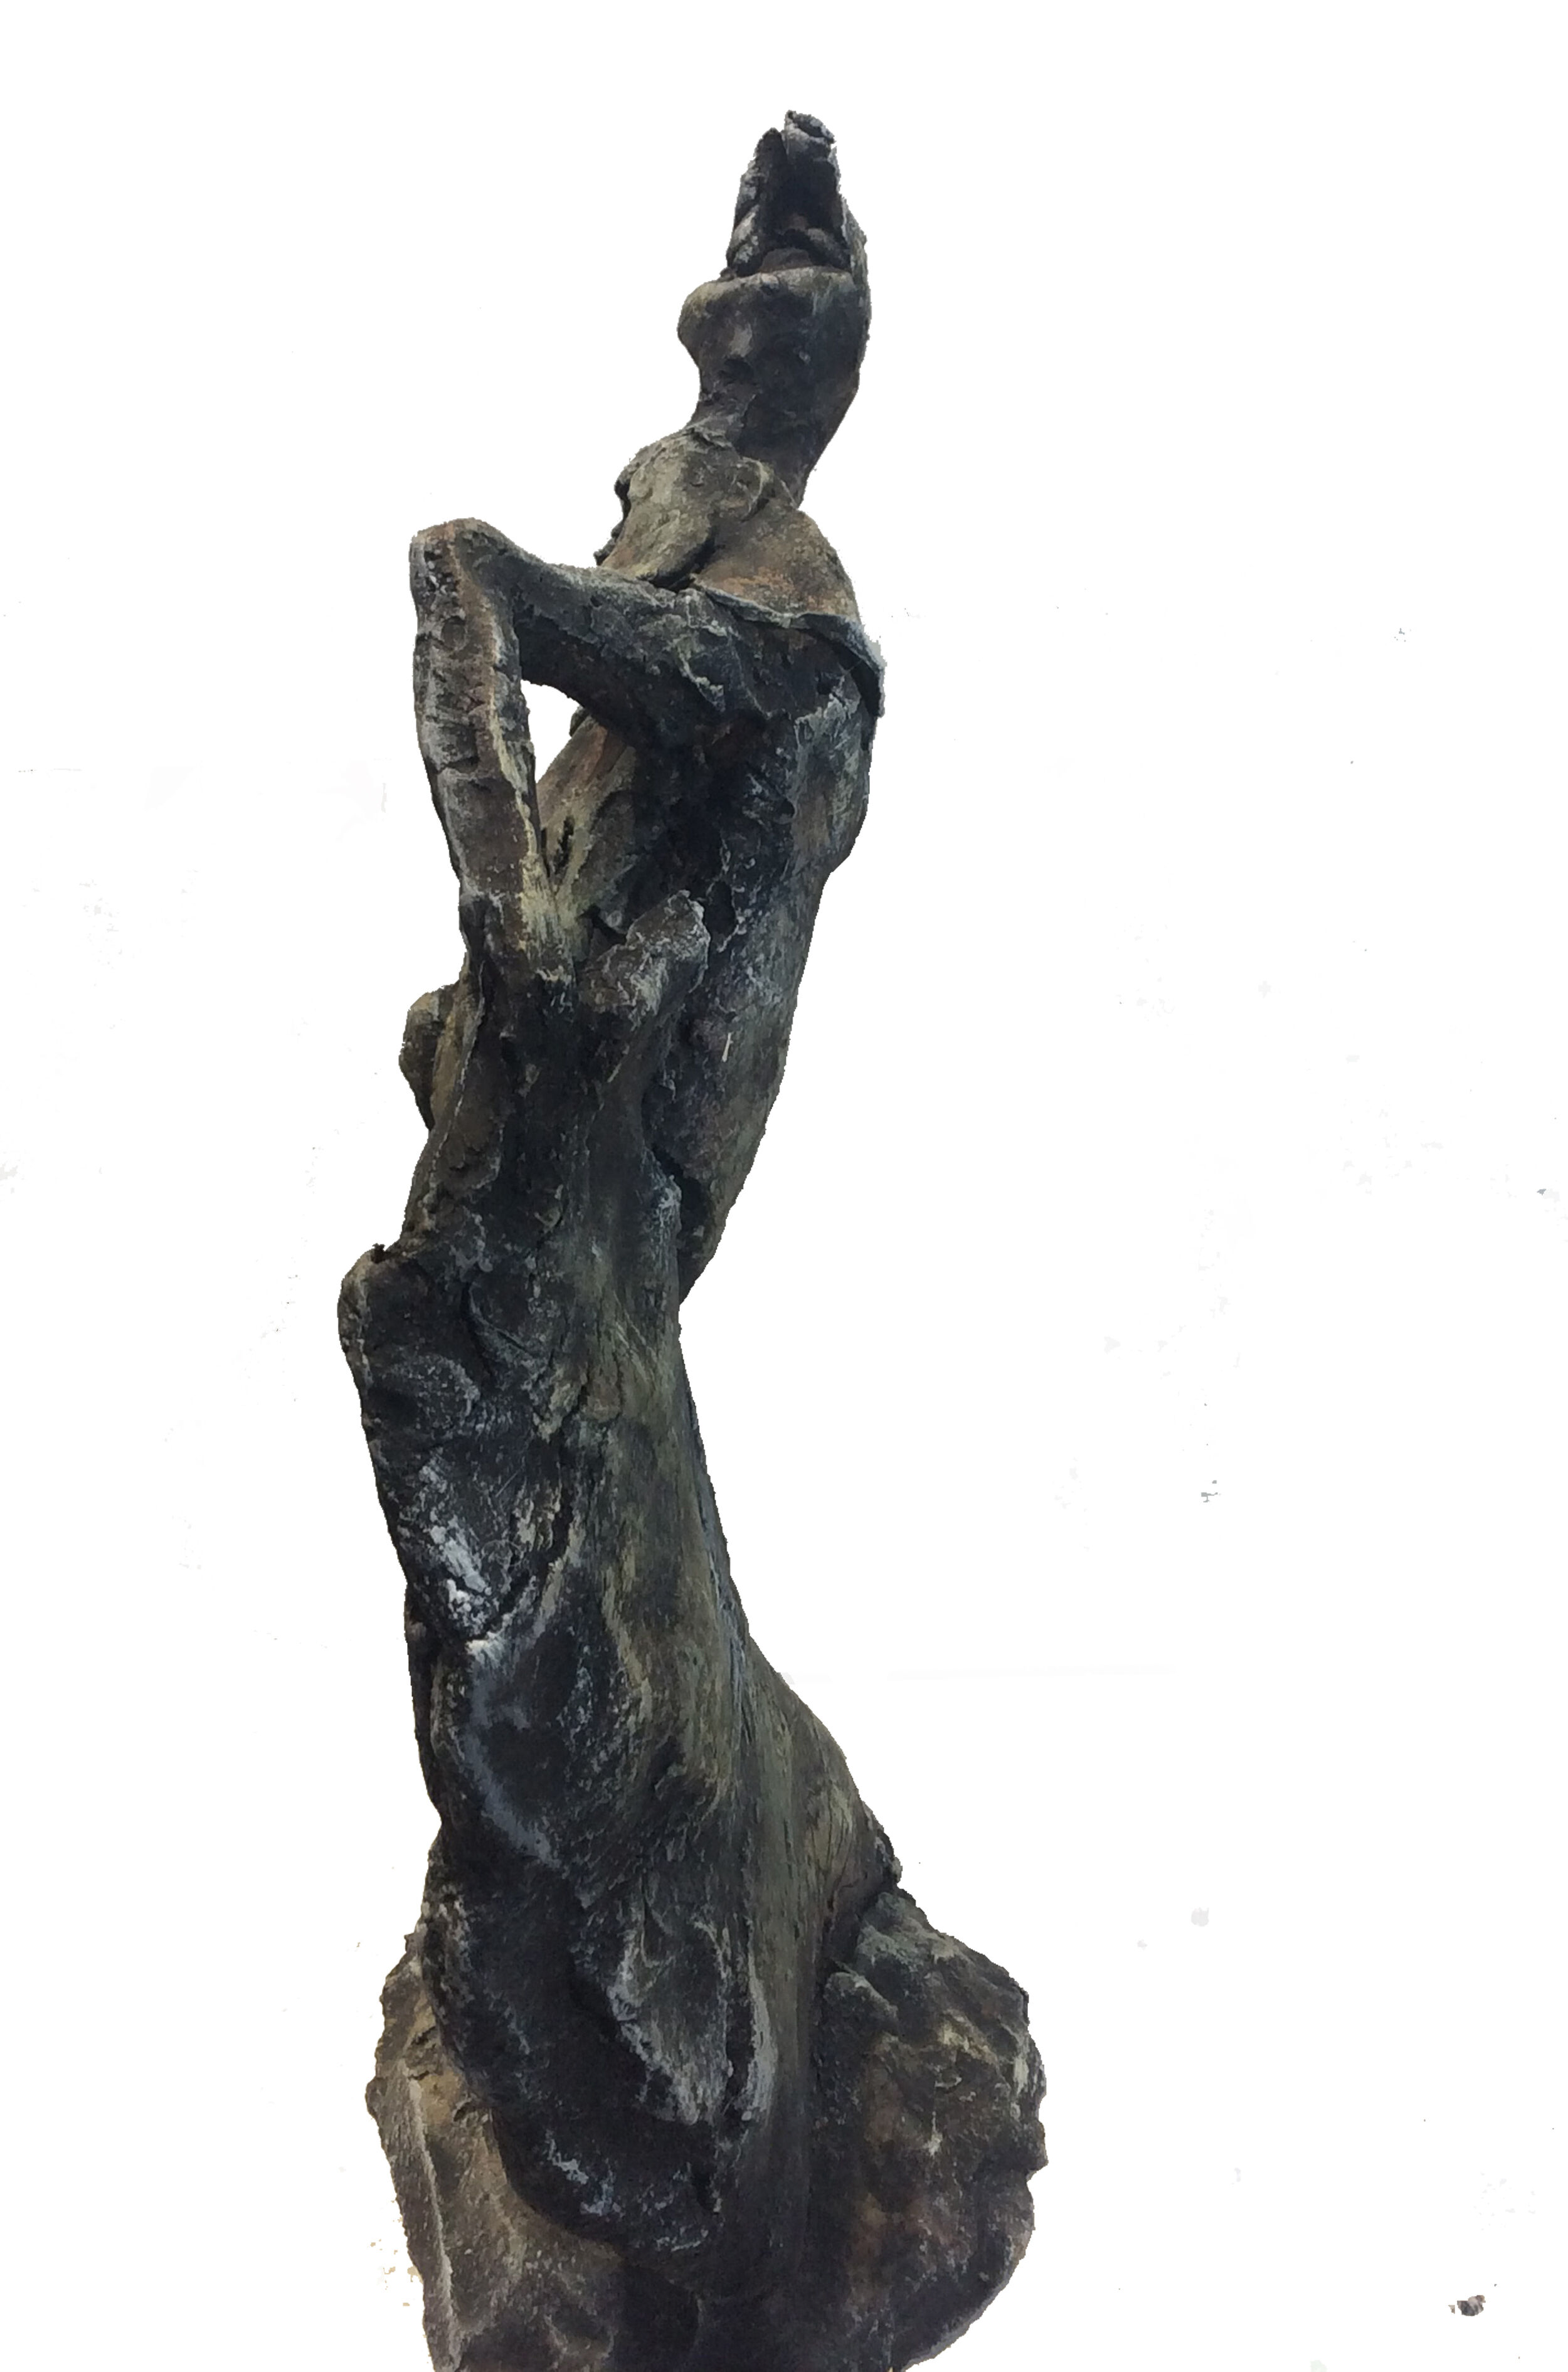 Sculpture "The dance II" (2020)